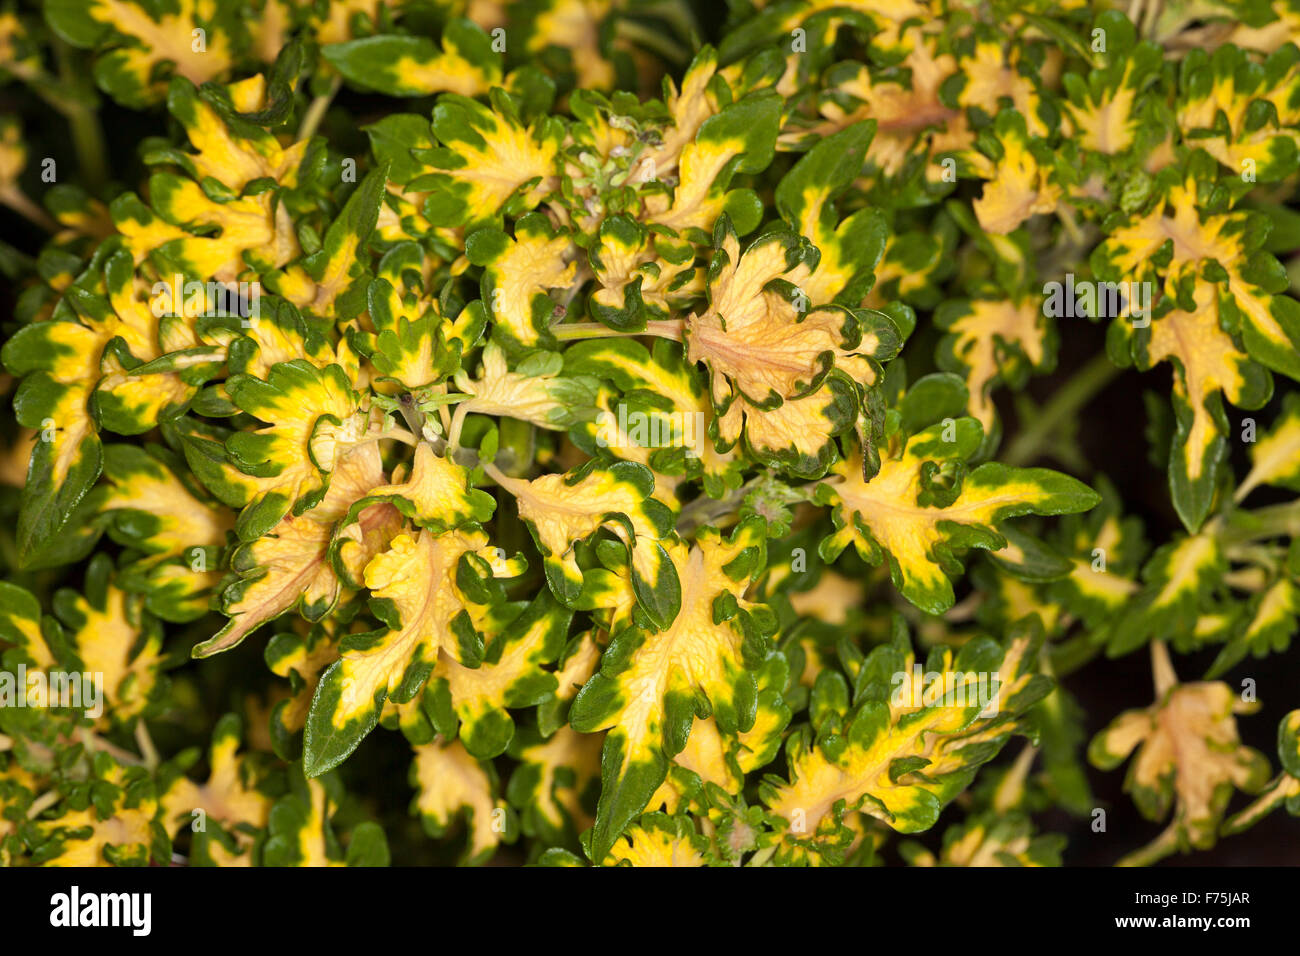 Buntnessel Solenostemon Scutellarioides "Coral mit Rüschen" Sammlung "Gold mit Rüschen", mehrjährige Pflanze mit lebhaften gelben & grünes Laub Stockfoto